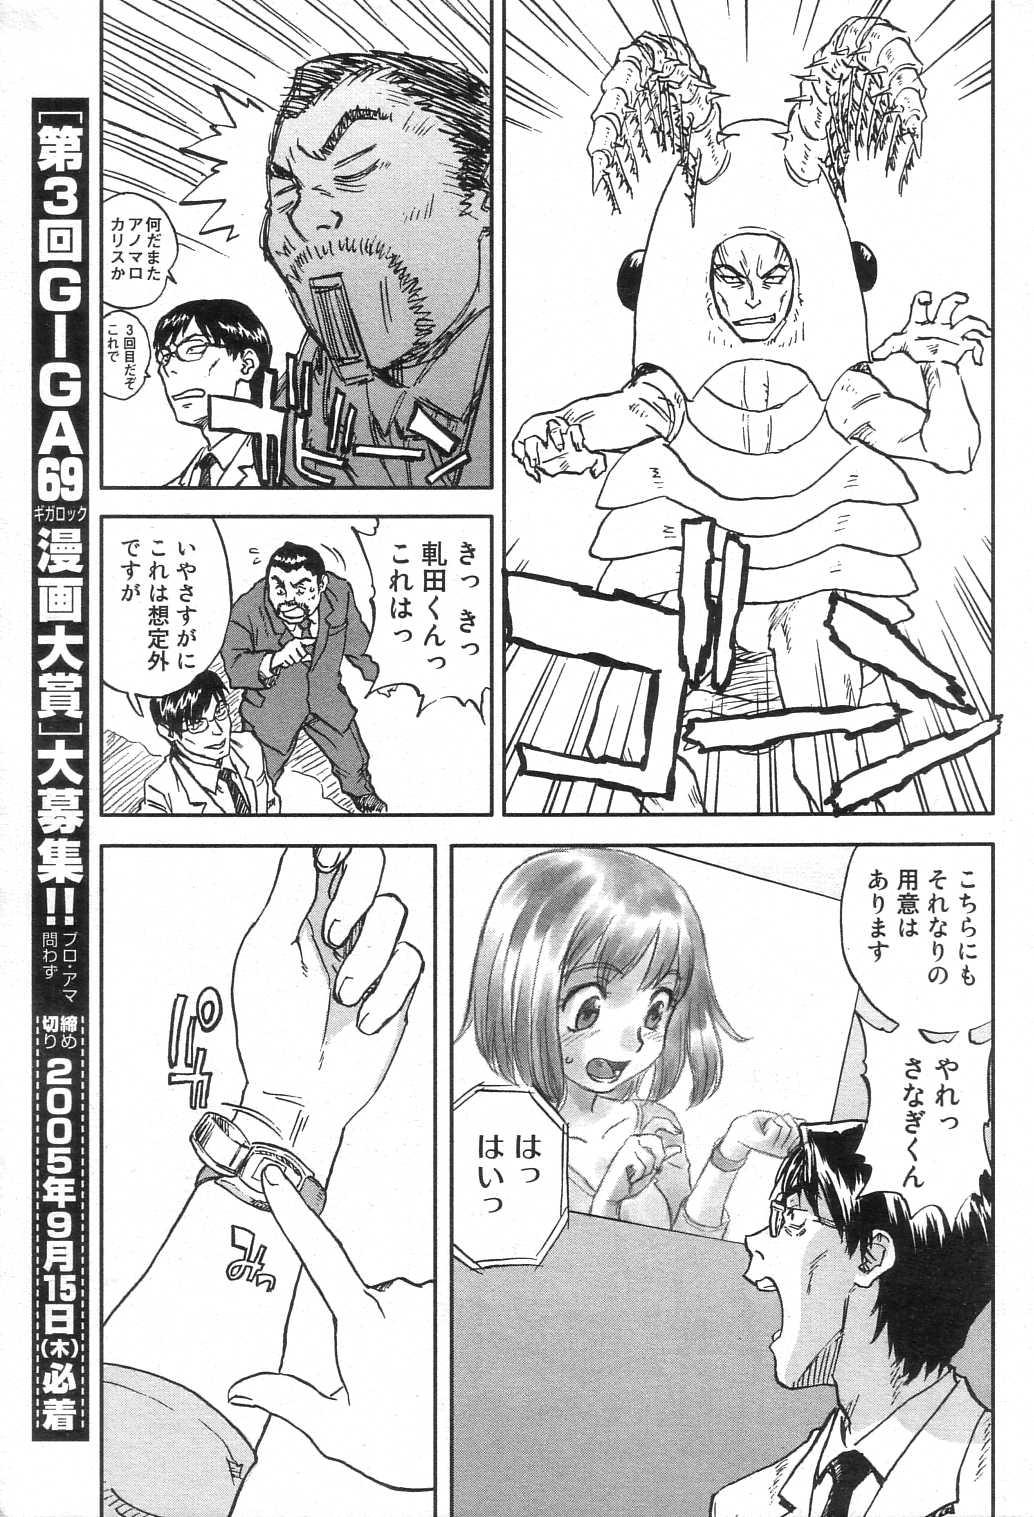 GIGA69 2005-08 Vol. 8 42